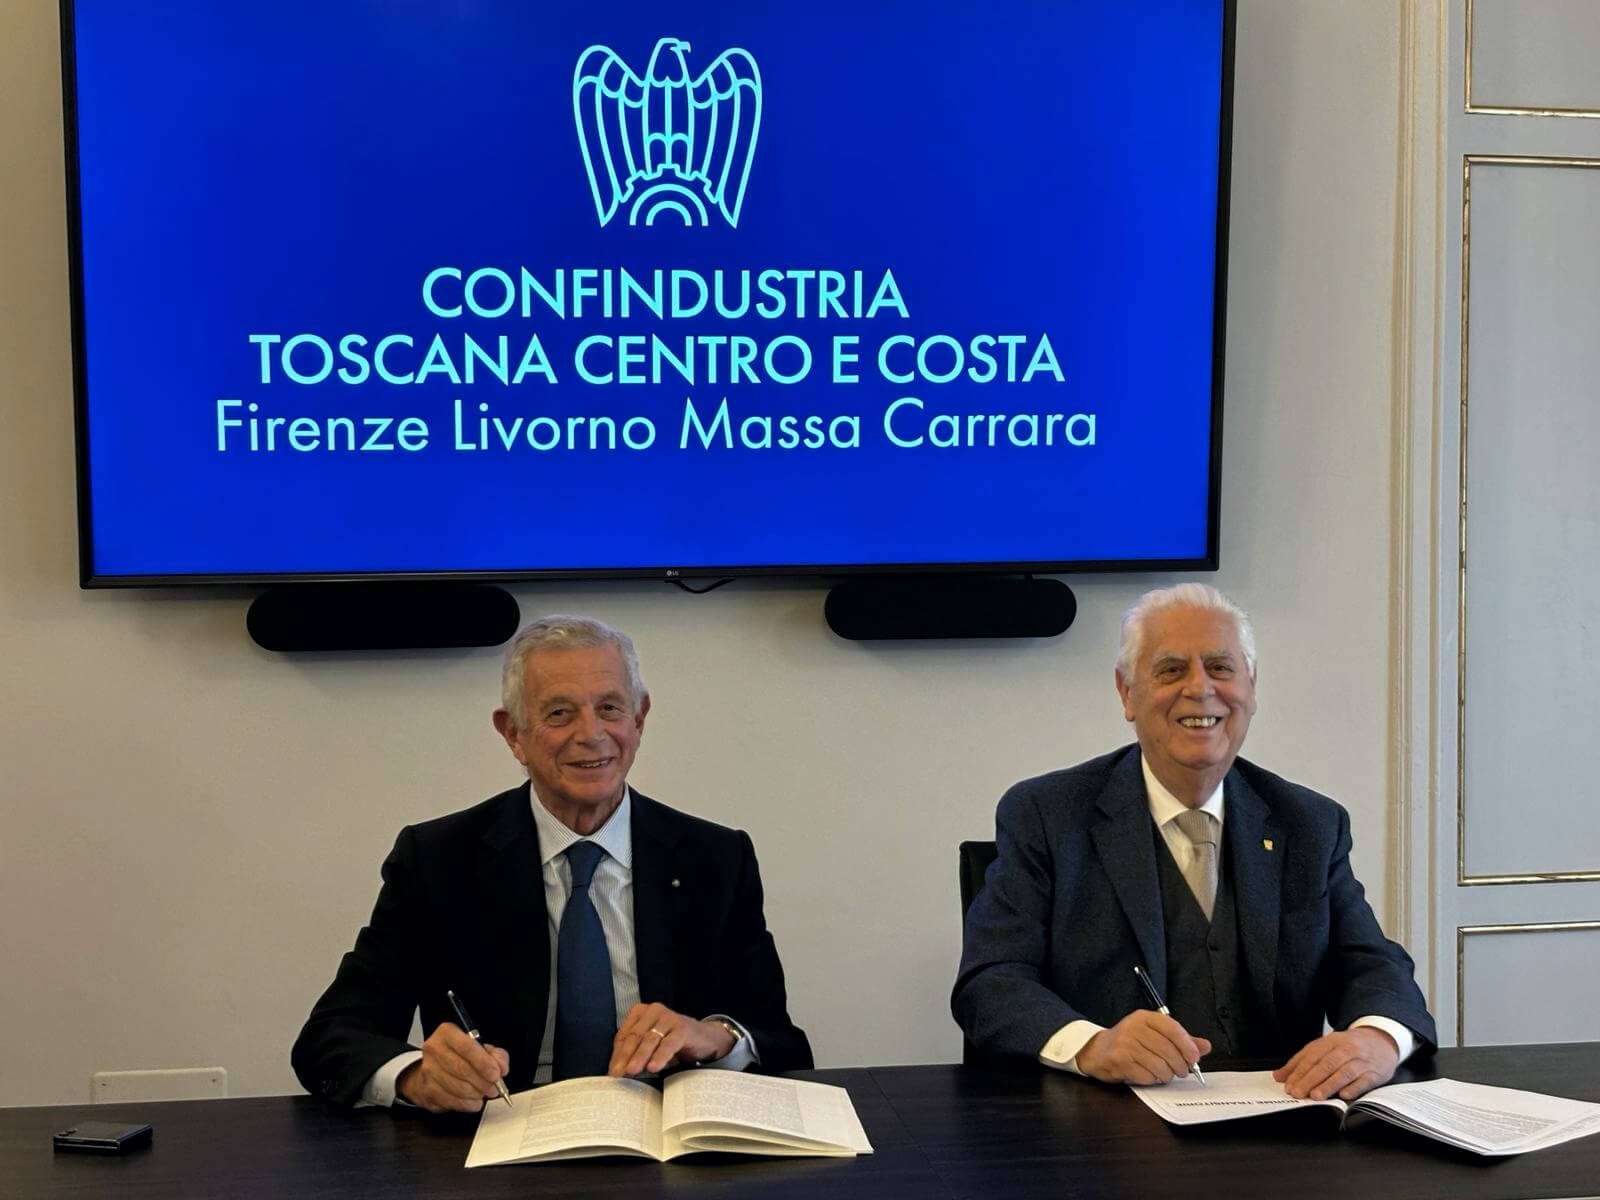 Nasce Confindustria Toscana Centro e Costa: Firenze, Livorno e Massa Carrara unite in una sola Confindustria